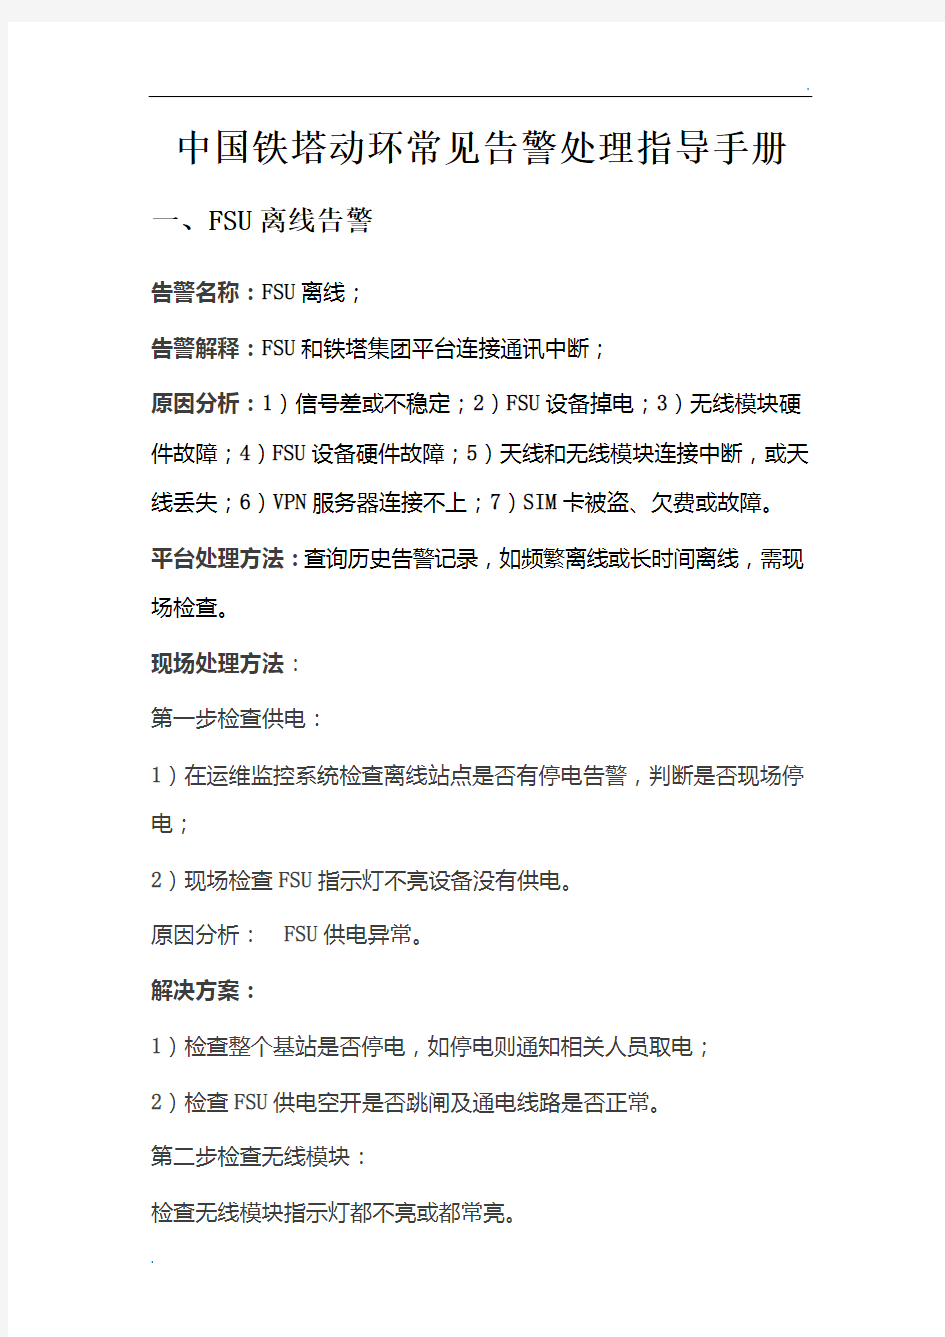 中国铁塔动环常见告警处理指导手册